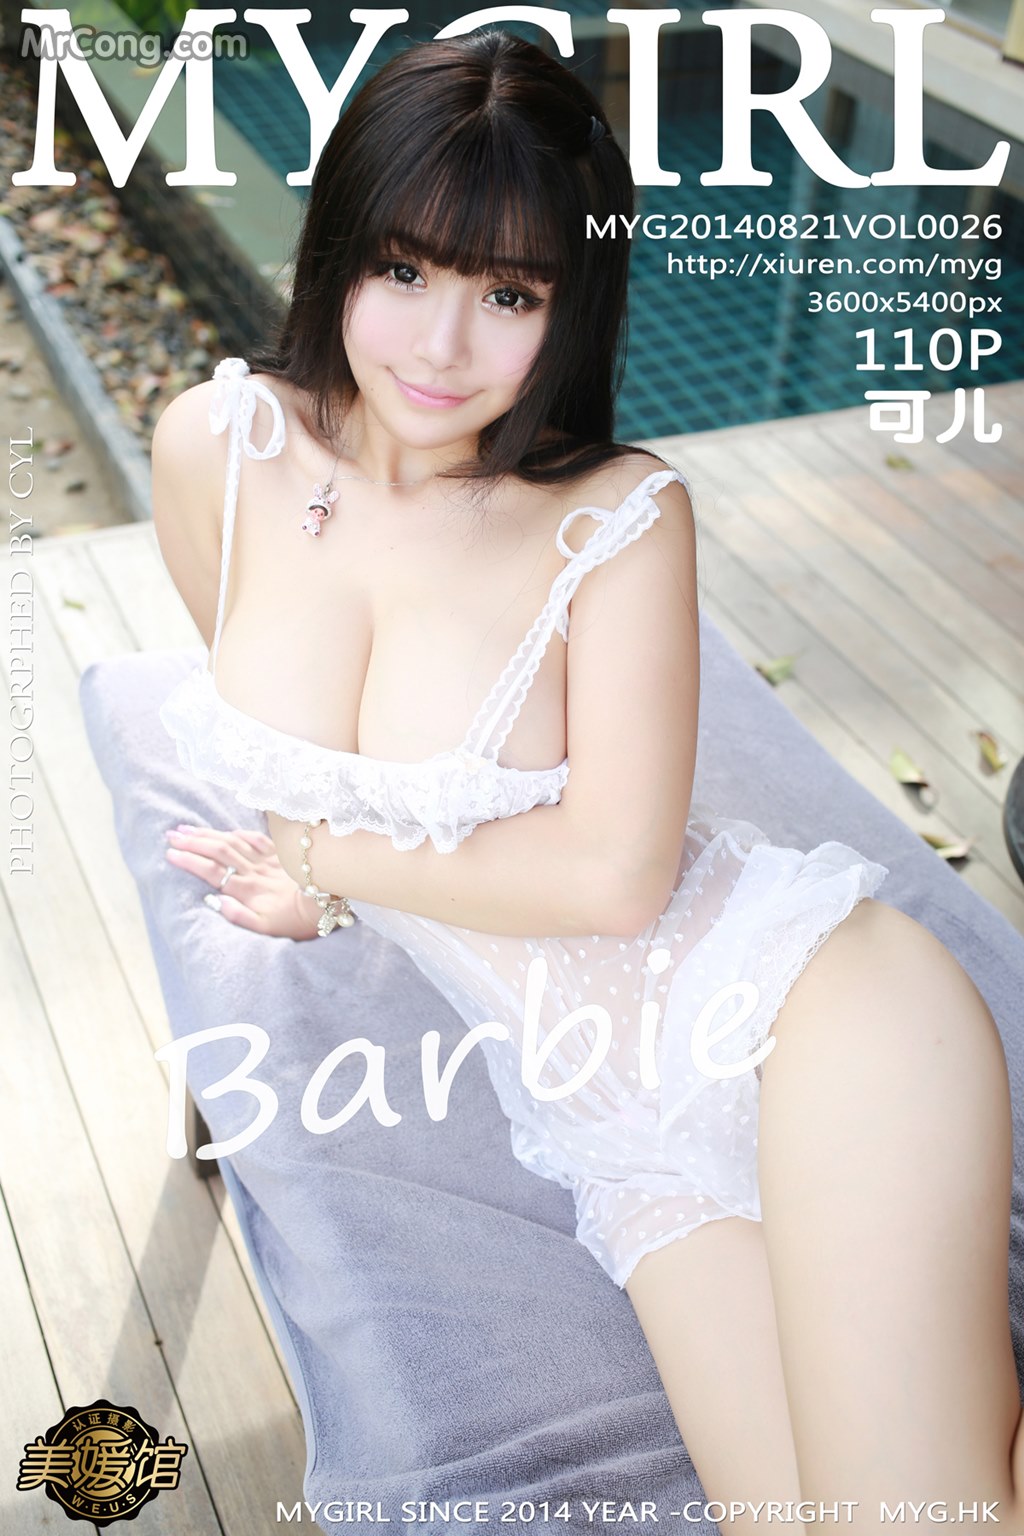 MyGirl Vol.026: Barbie Model Ke Er (Barbie 可 儿) (111 pictures)